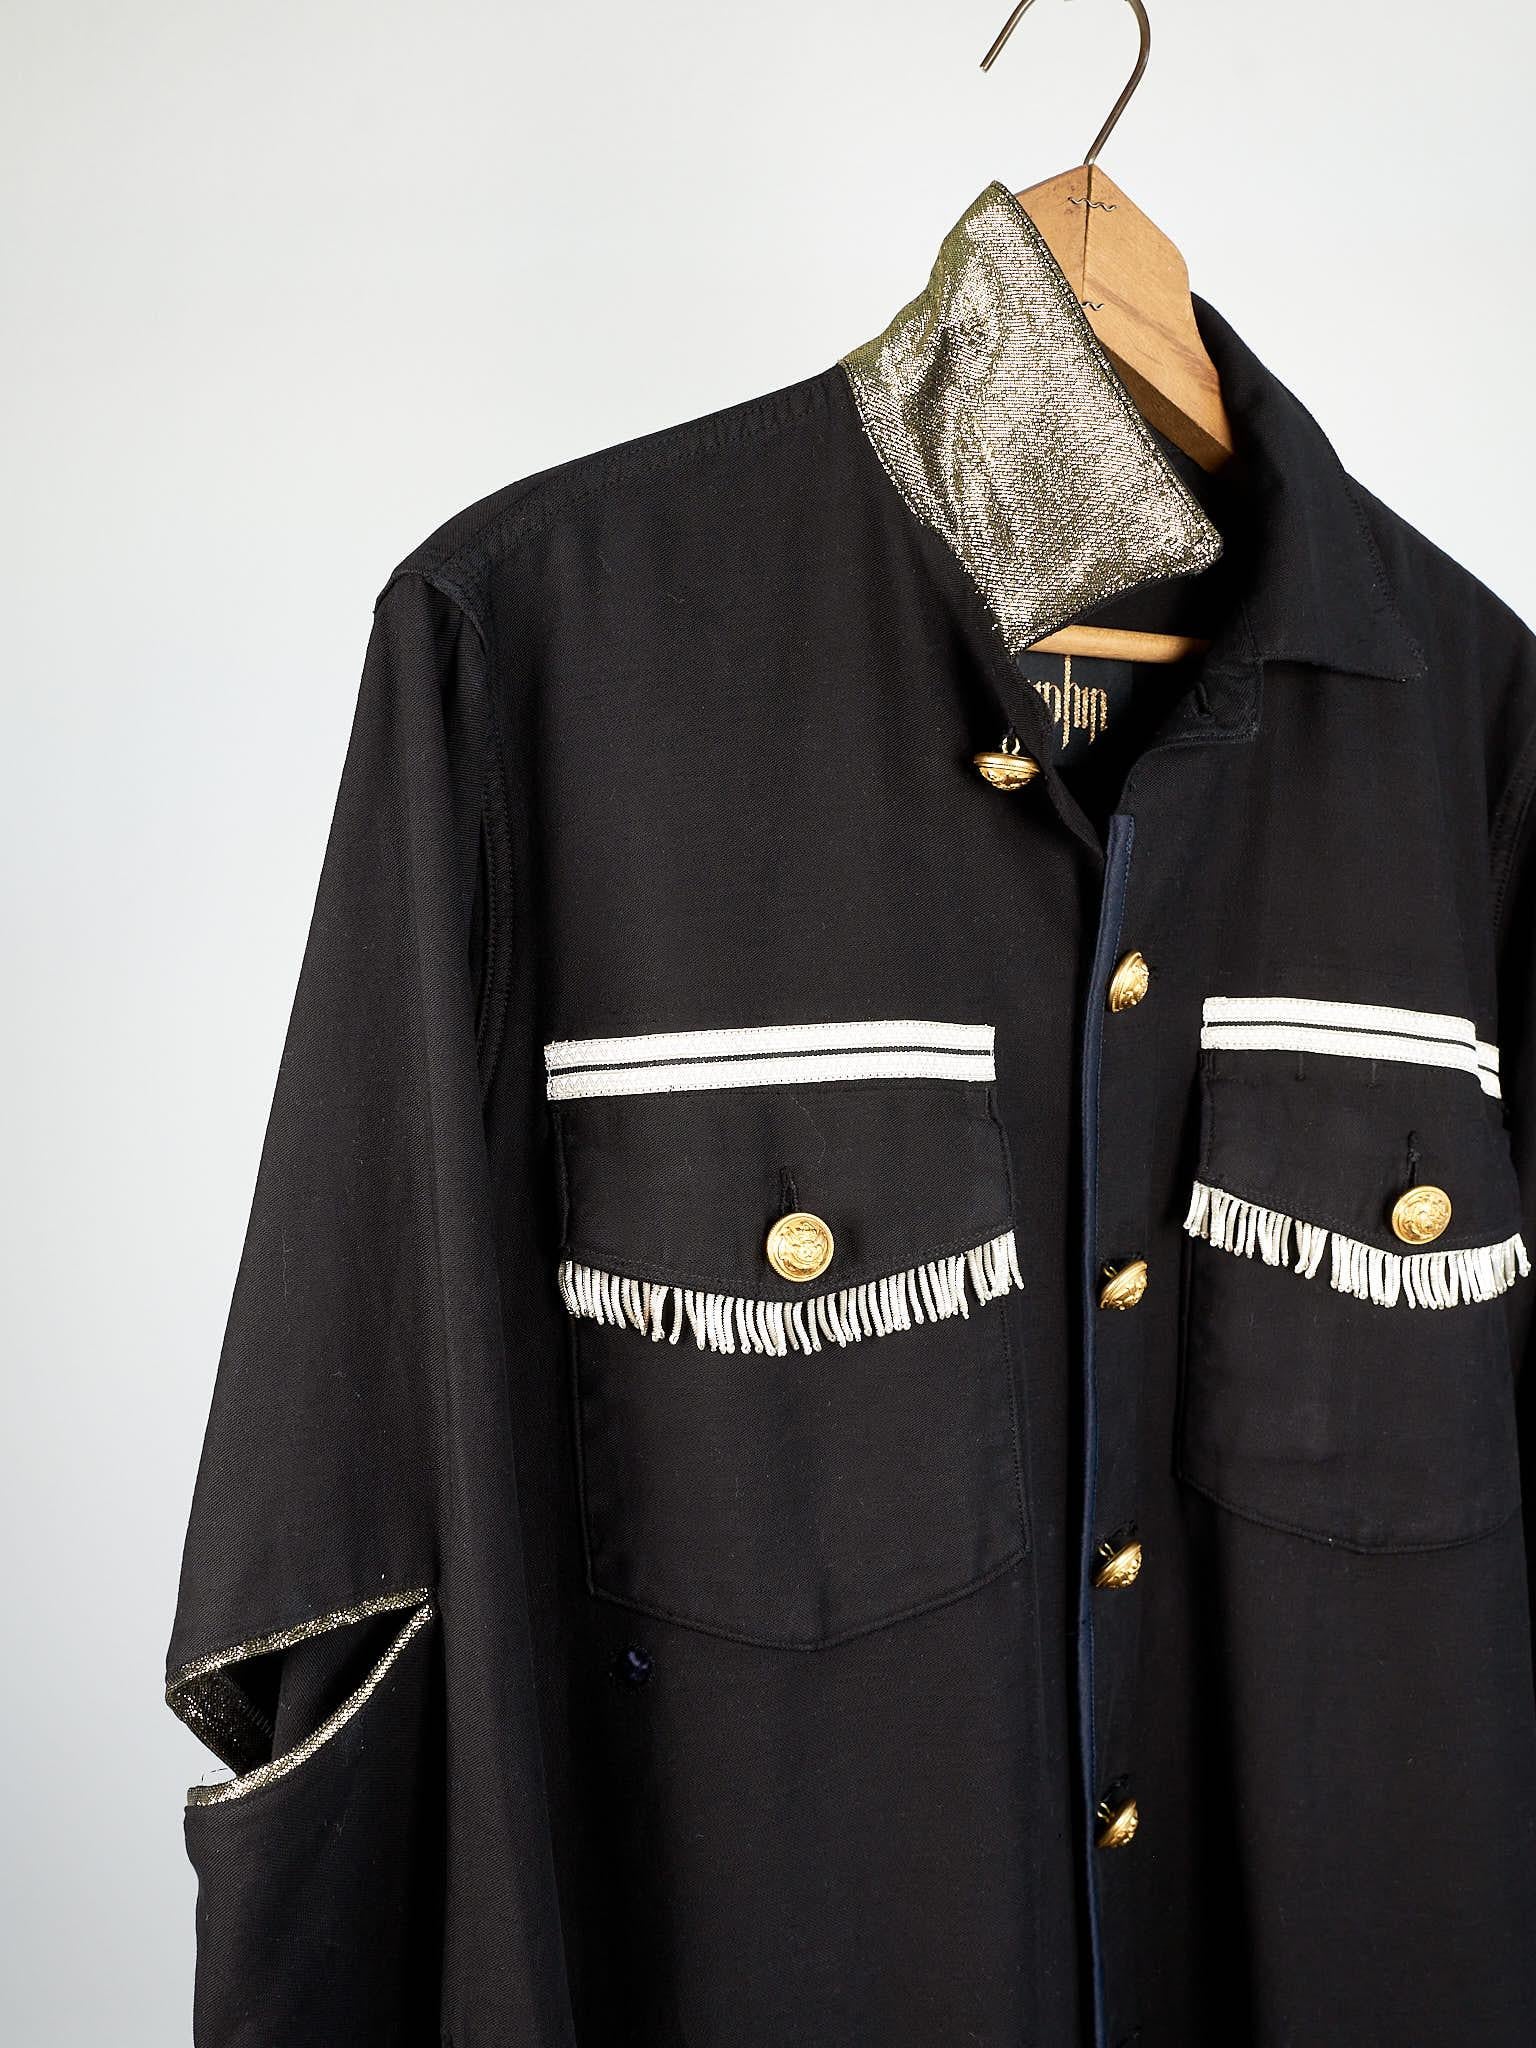 Vintage Jacket in Black Embellished Silver Fringe Braids Gold Buttons Large 2